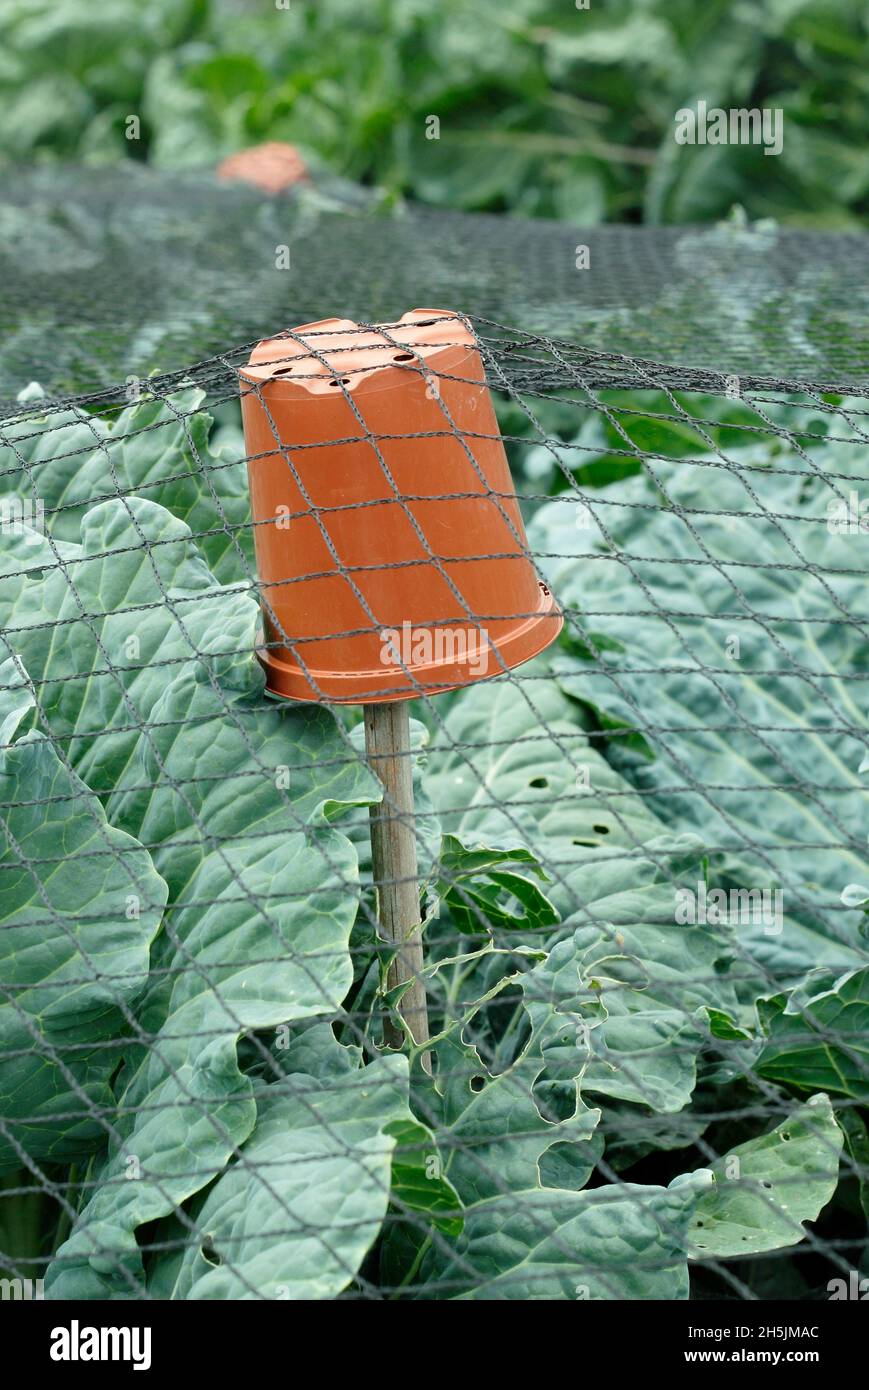 Écimeuse de canne.Pots de plantes en plastique sur le dessus des cannes en bambou utilisés pour soutenir le filet sur les brassicas pour aider à prévenir les dommages par les oiseaux.ROYAUME-UNI Banque D'Images